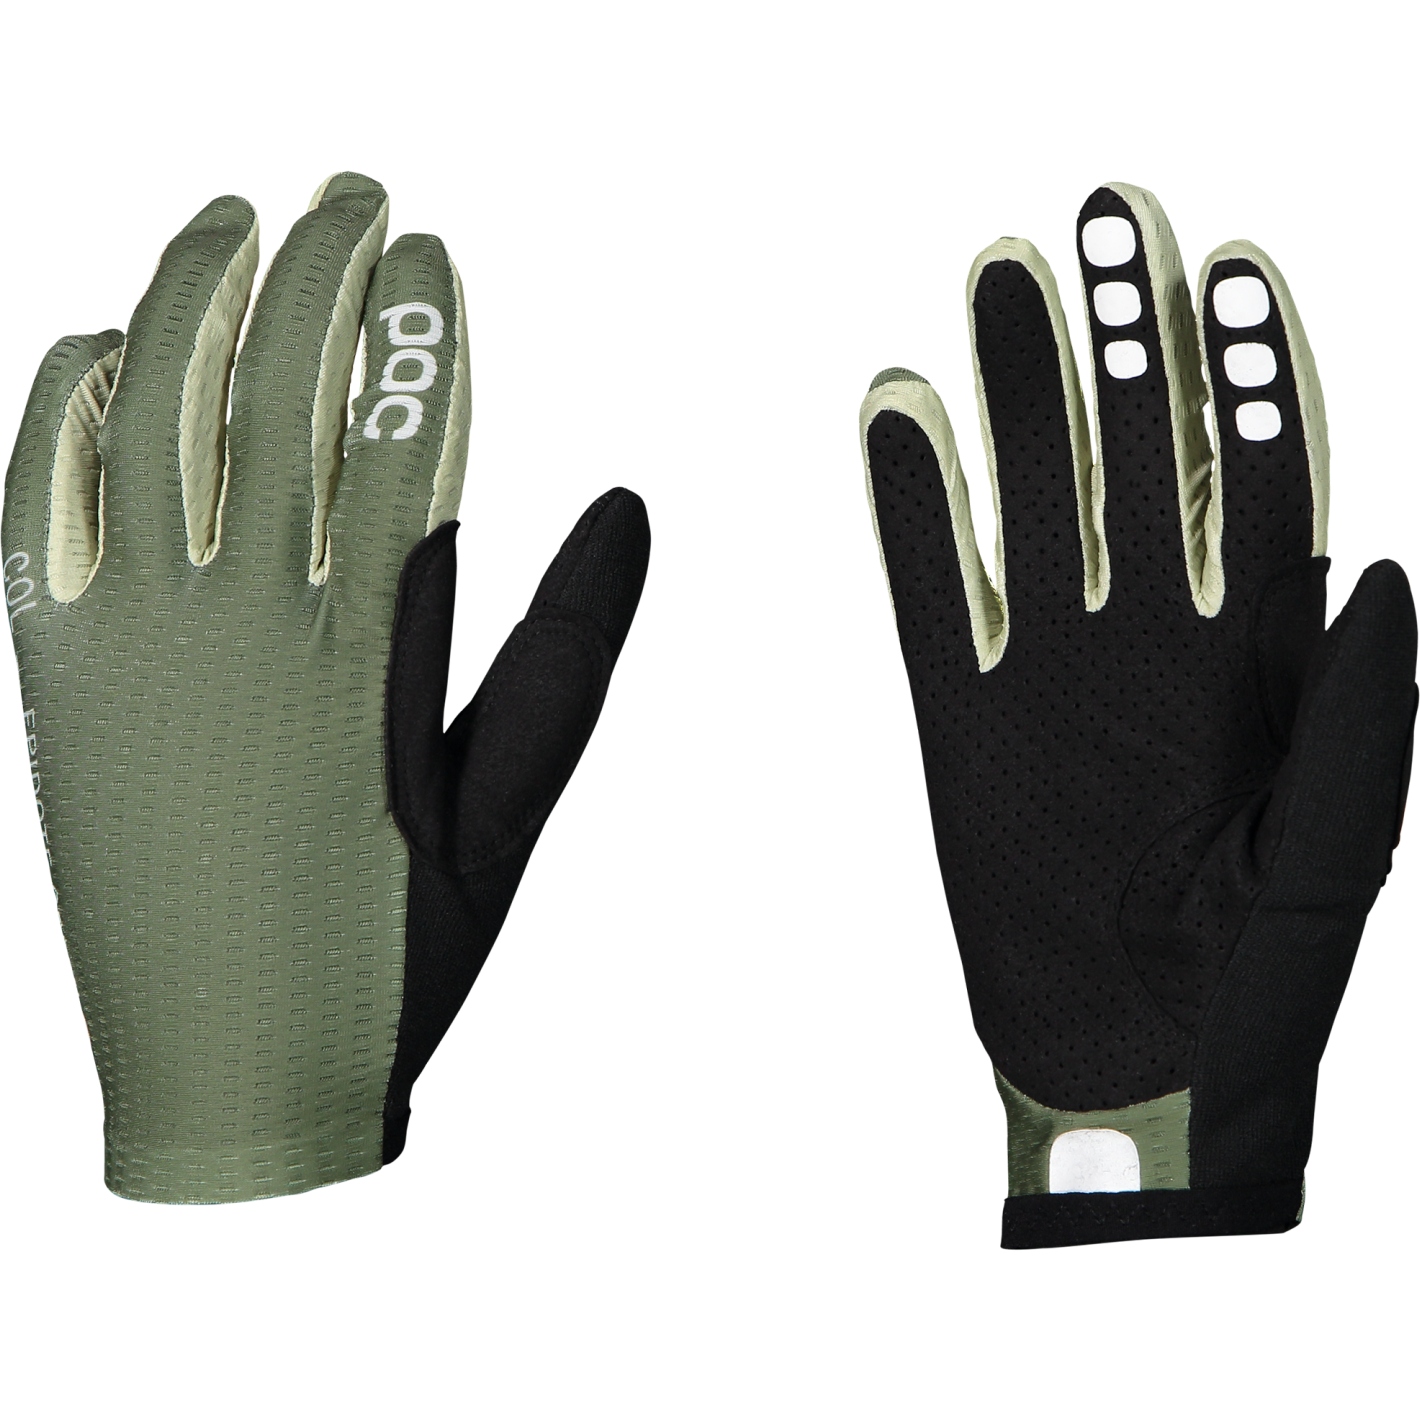 Produktbild von POC Savant MTB Handschuhe - 1460 Epidote Green